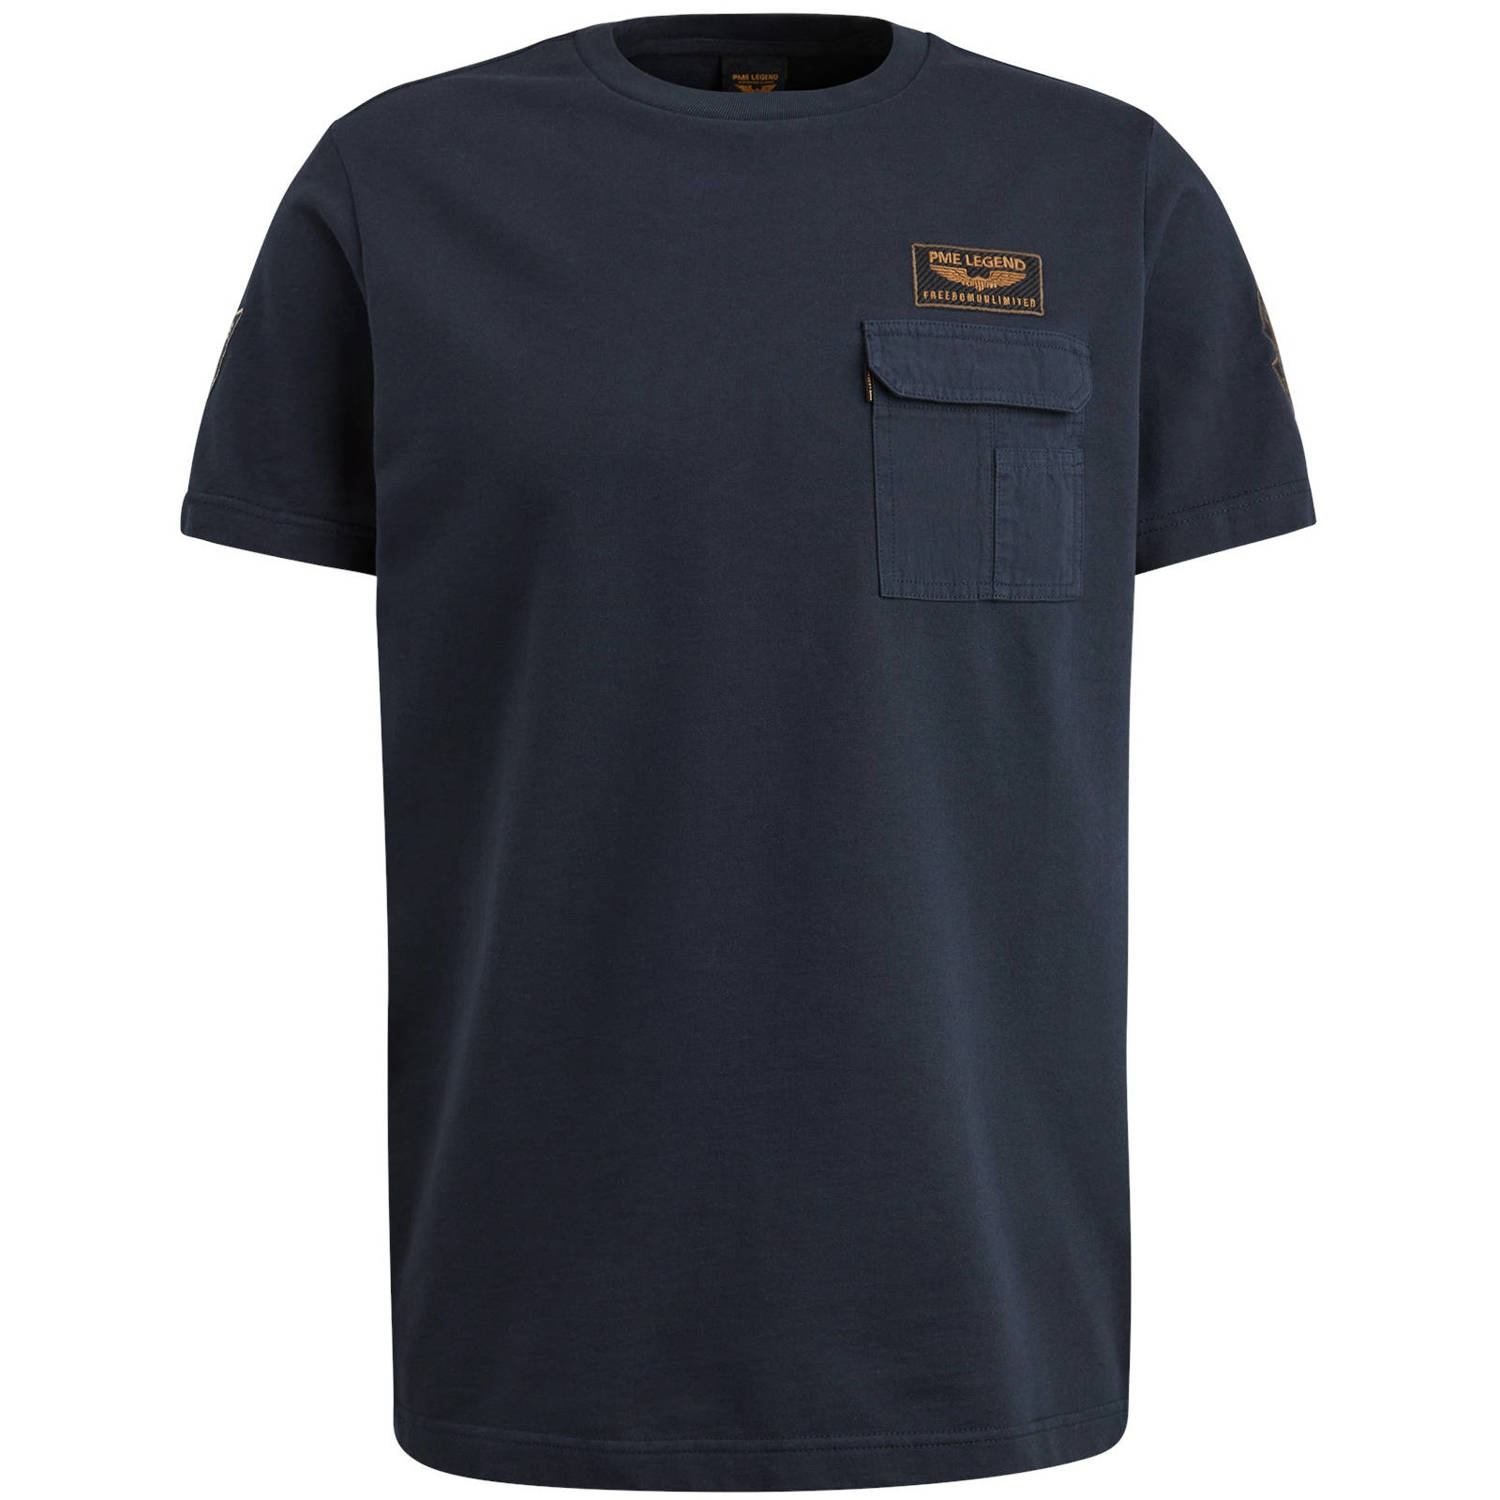 PME Legend T-shirt met logo navy